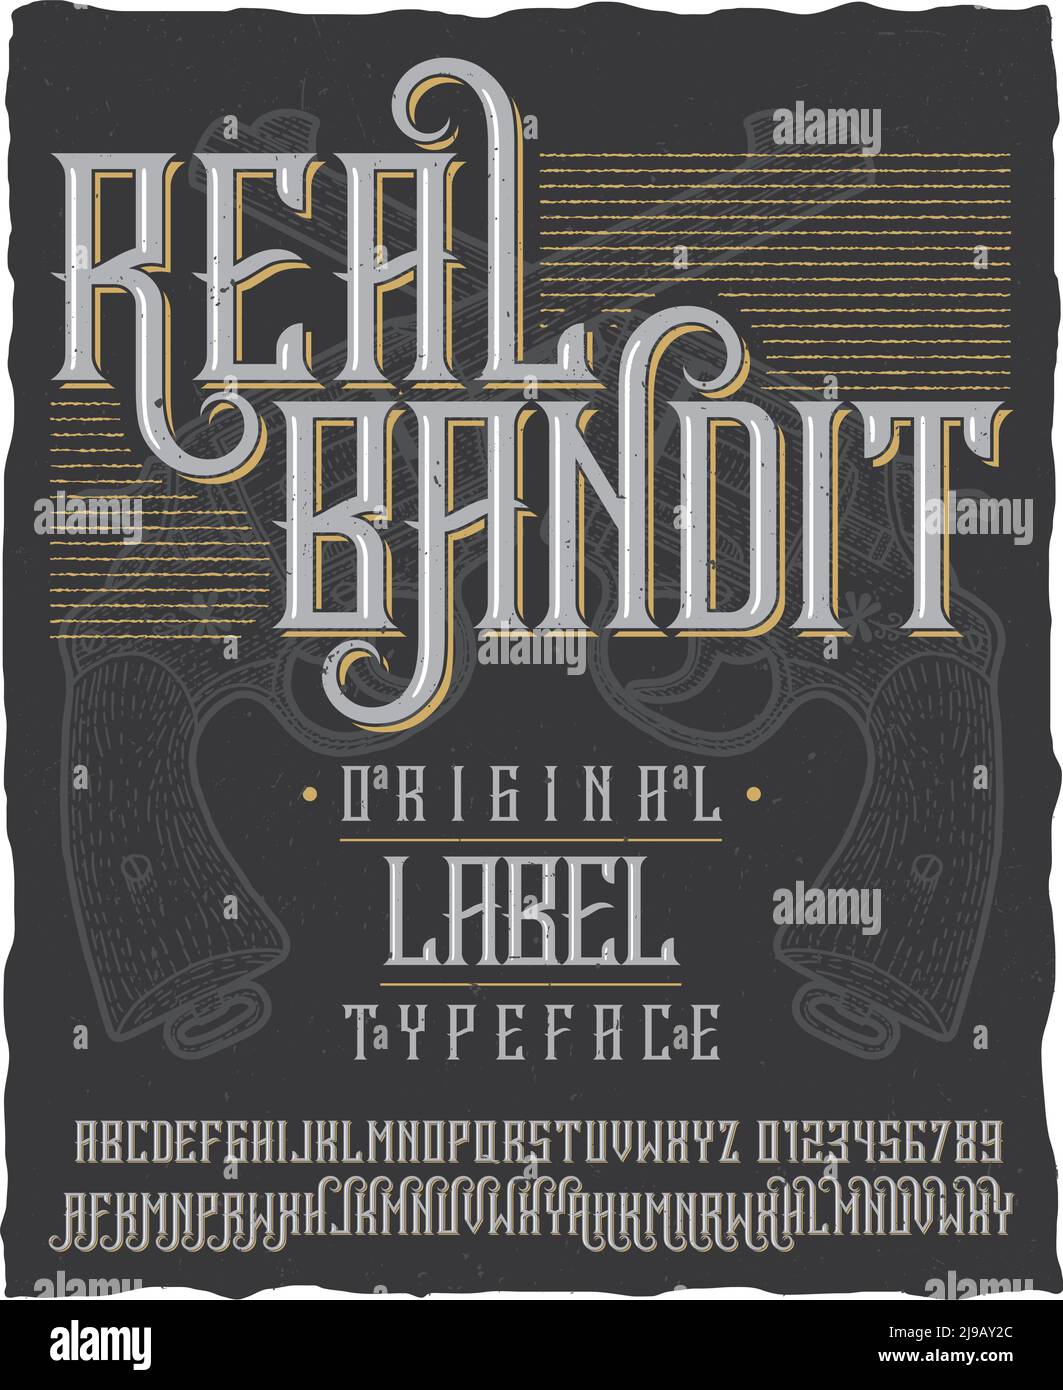 Affiche Real bandit typeface avec deux revolvers dessinés à la main sur une illustration vectorielle d'arrière-plan poussiéreuse Illustration de Vecteur